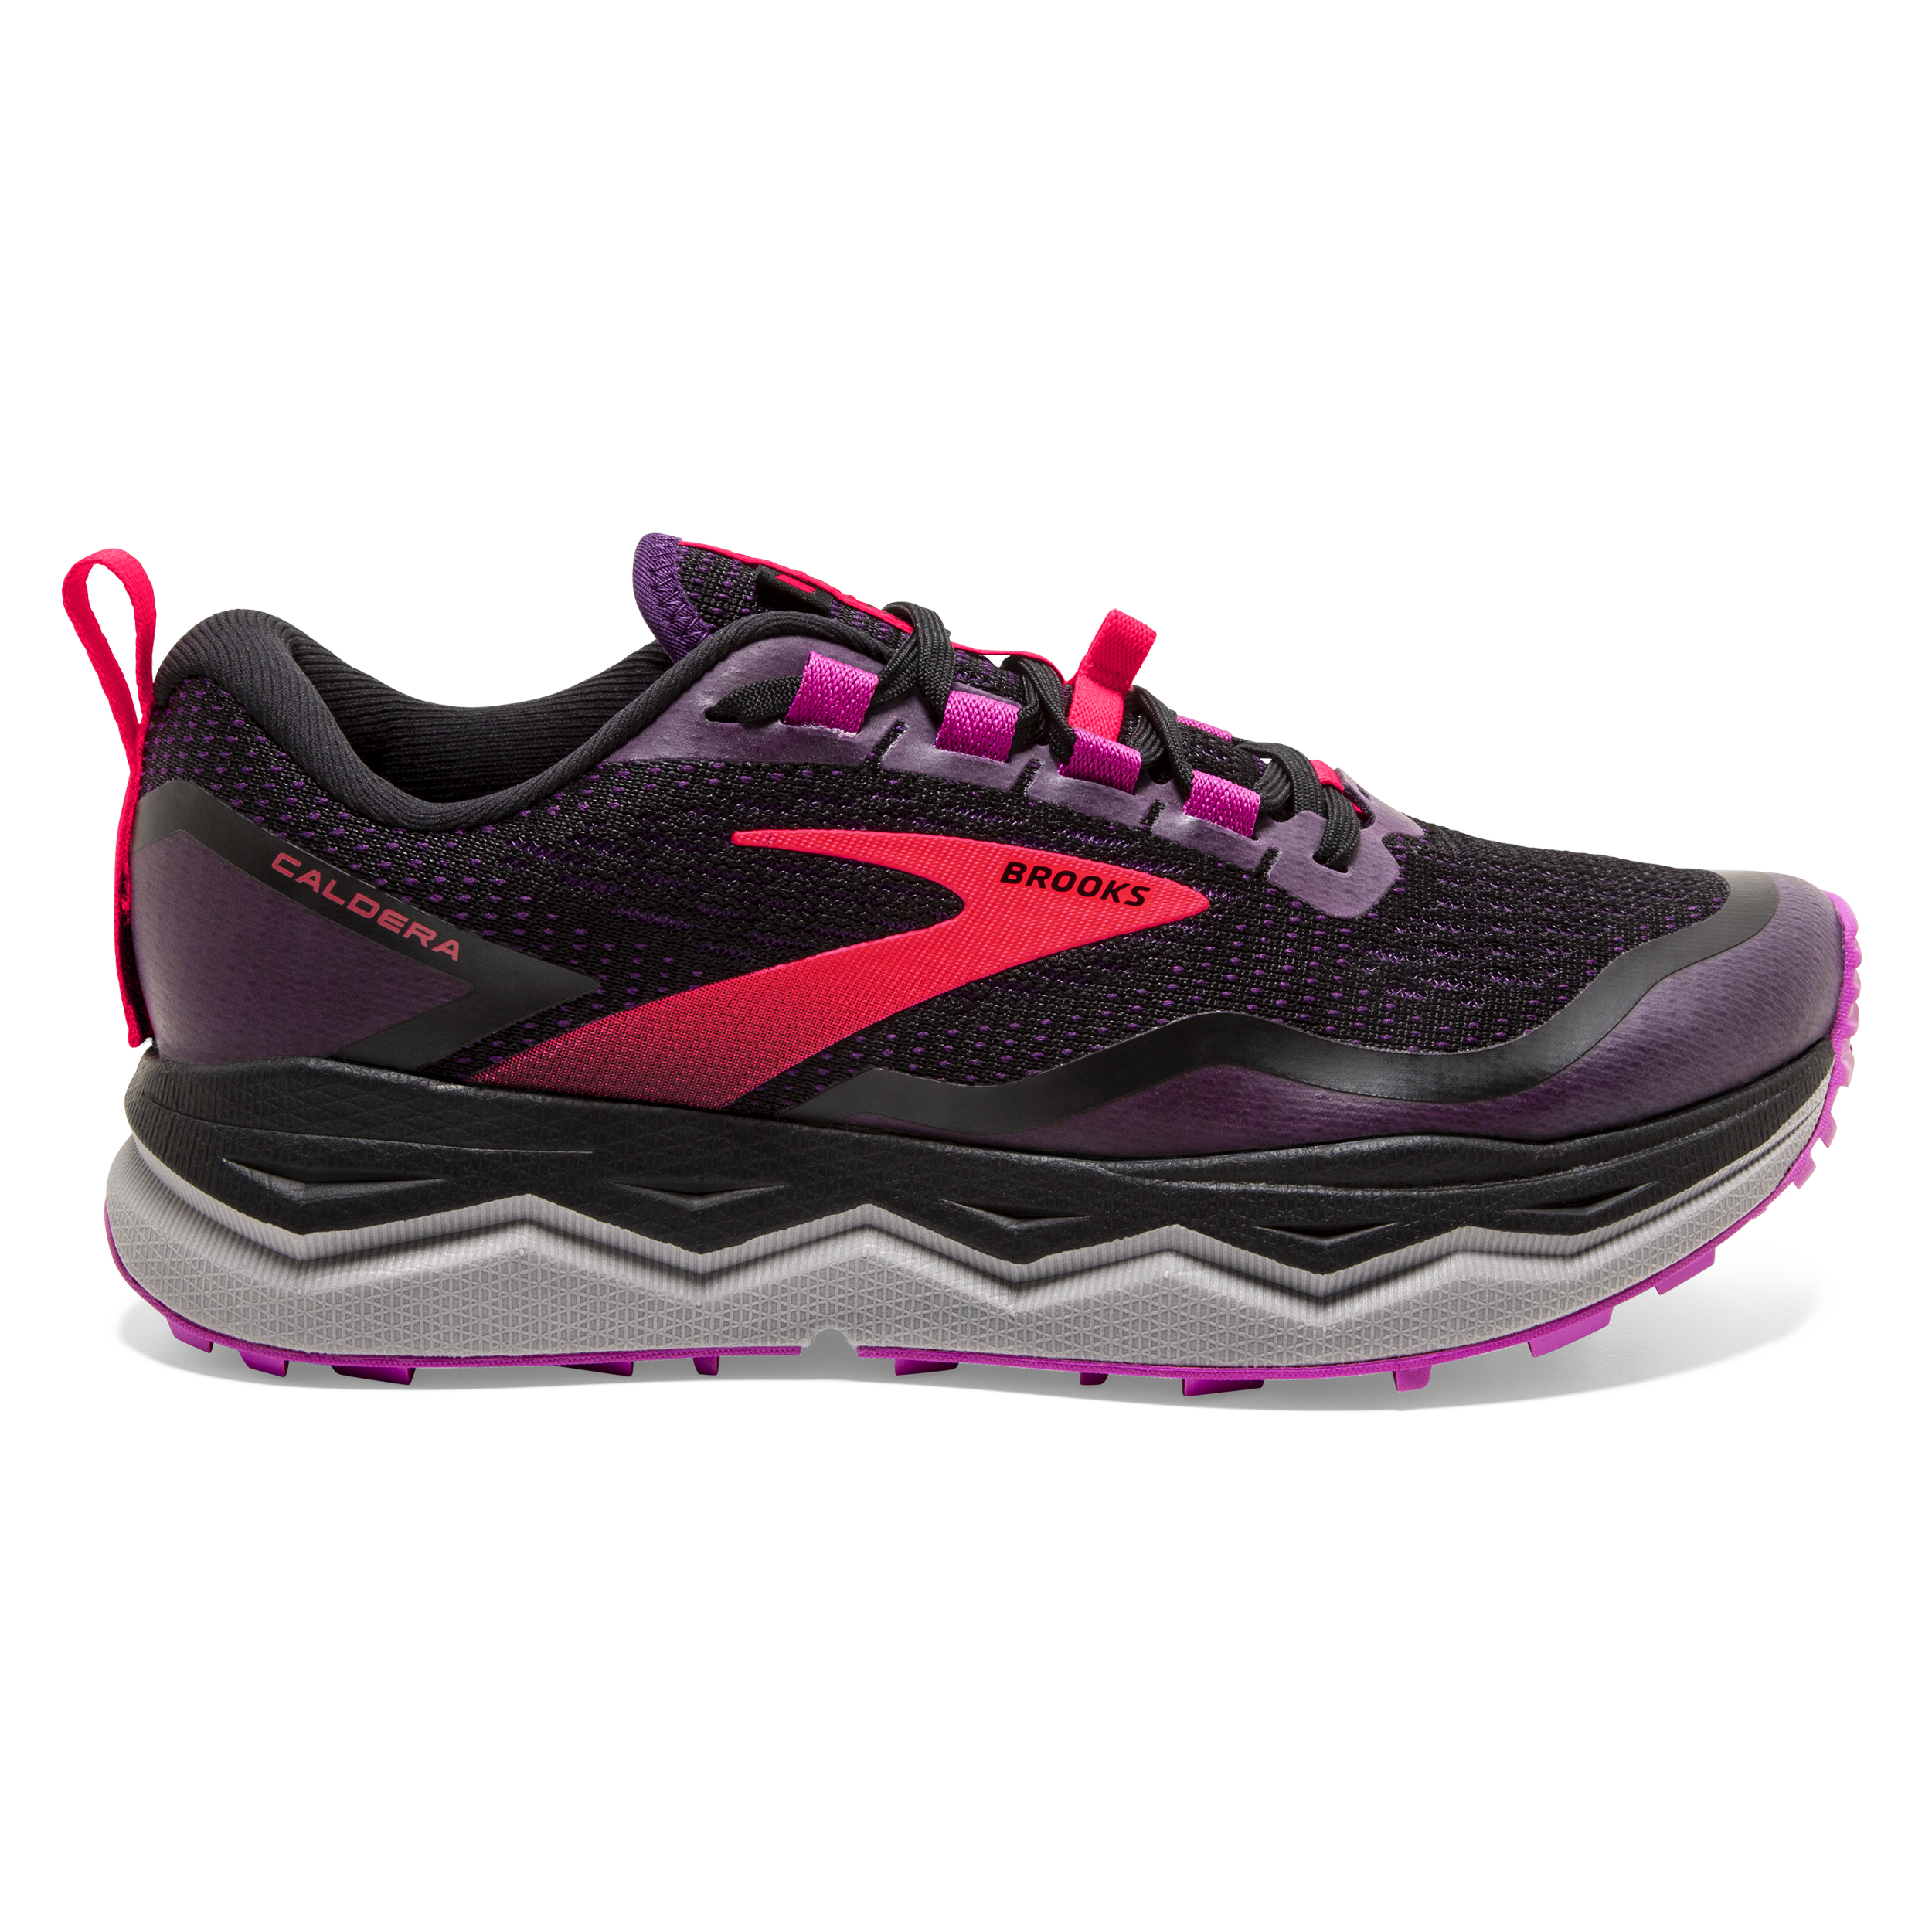 Caldera 5 : Chaussures de Running sur longue distance pour femme | Brooks  Running